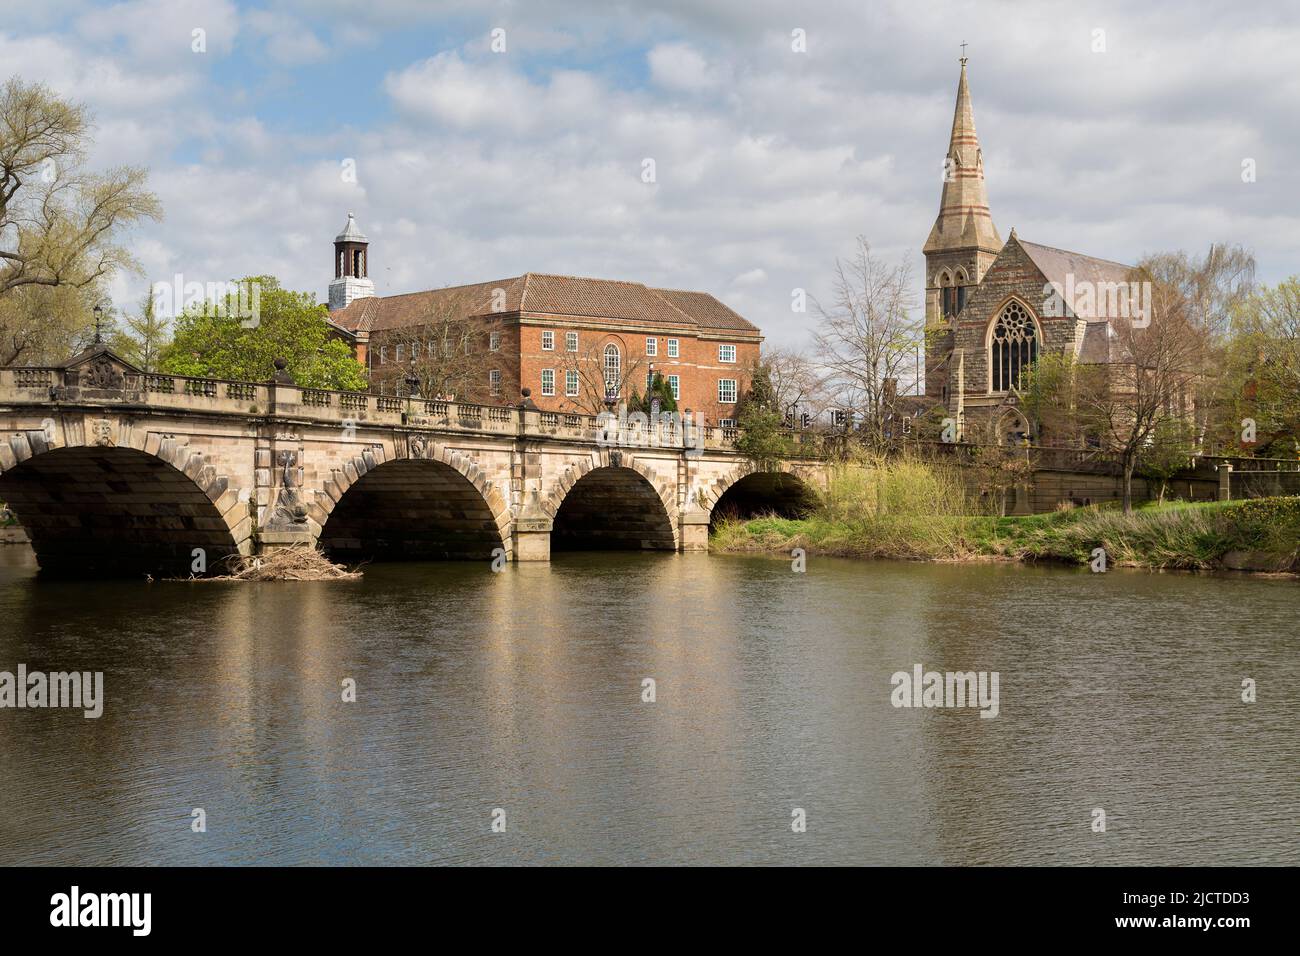 Il ponte inglese che attraversa il fiume Severn a Shrewsbury, Inghilterra. D'altra parte, la Shrewsbury United Reform Church e il sesto college. Foto Stock